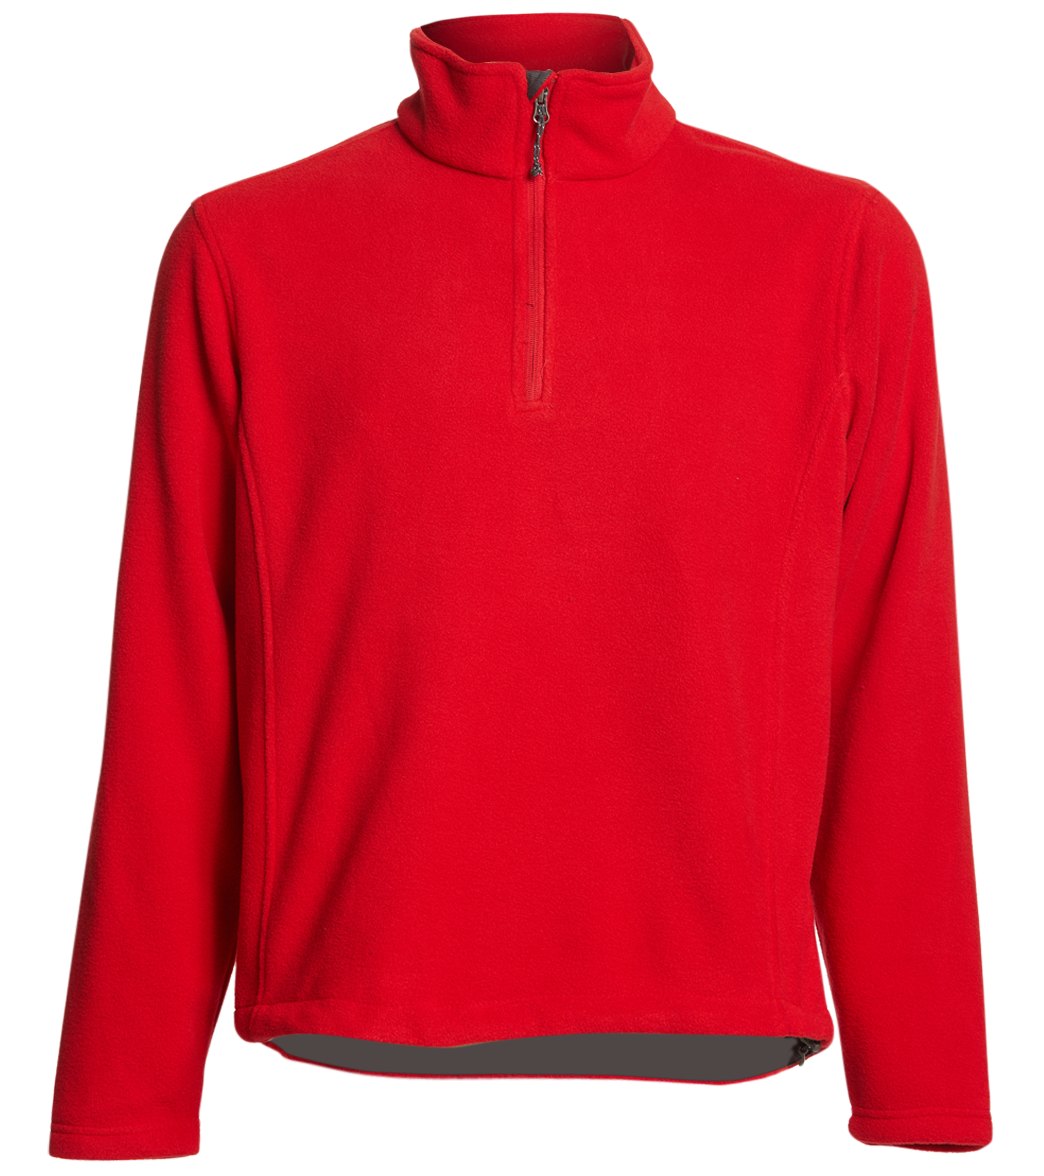 Men's Fleece 1/4-Zip Pullover - True Red Medium Polyester - Swimoutlet.com